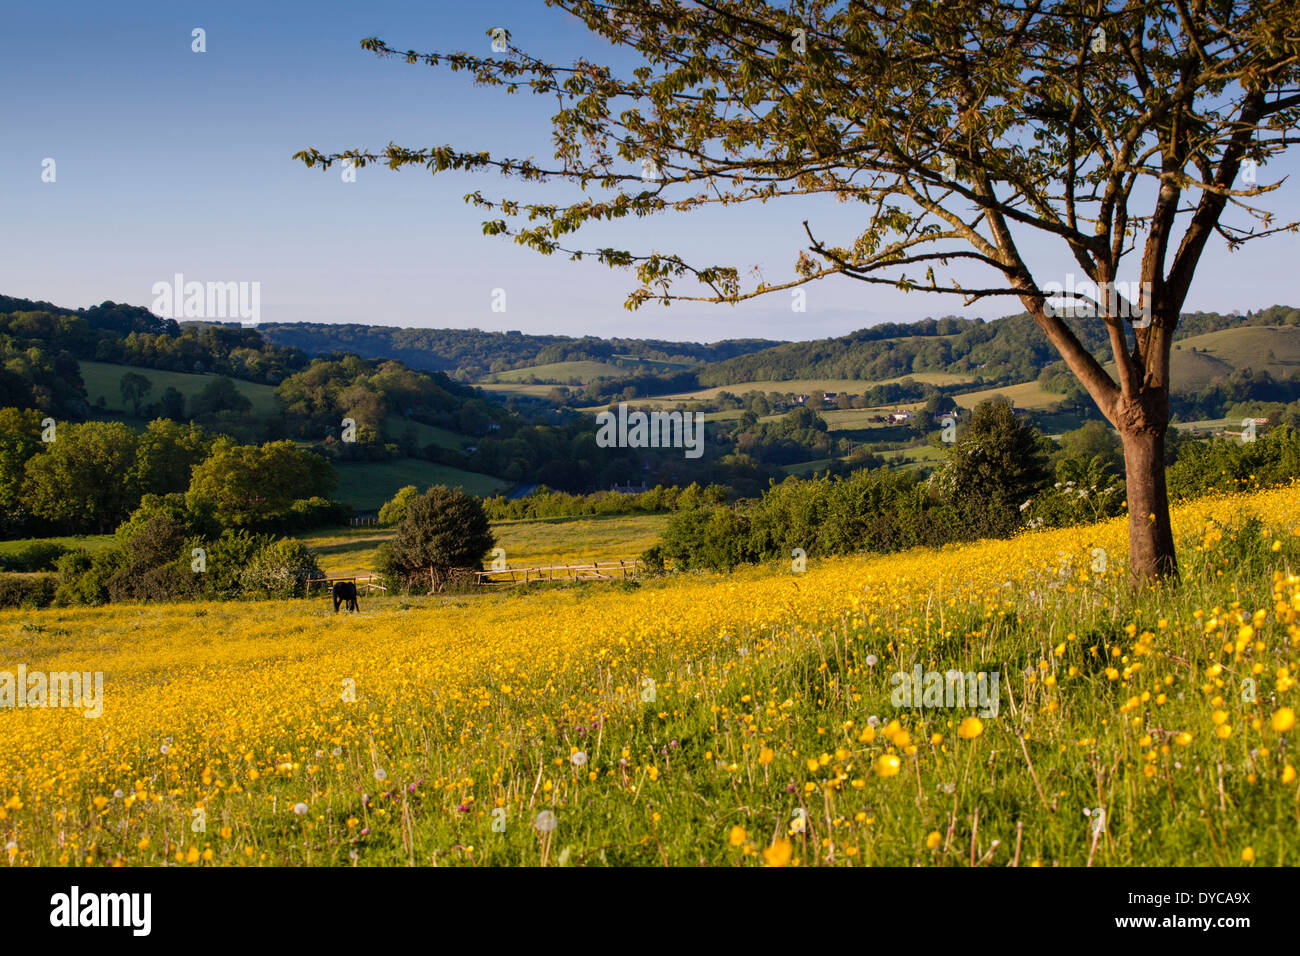 Die Slad Tal, Stroud, Gloucestershire, UK. Standort des Buches "Apfelwein mit Rosie" von Laurie Lee. Stockfoto